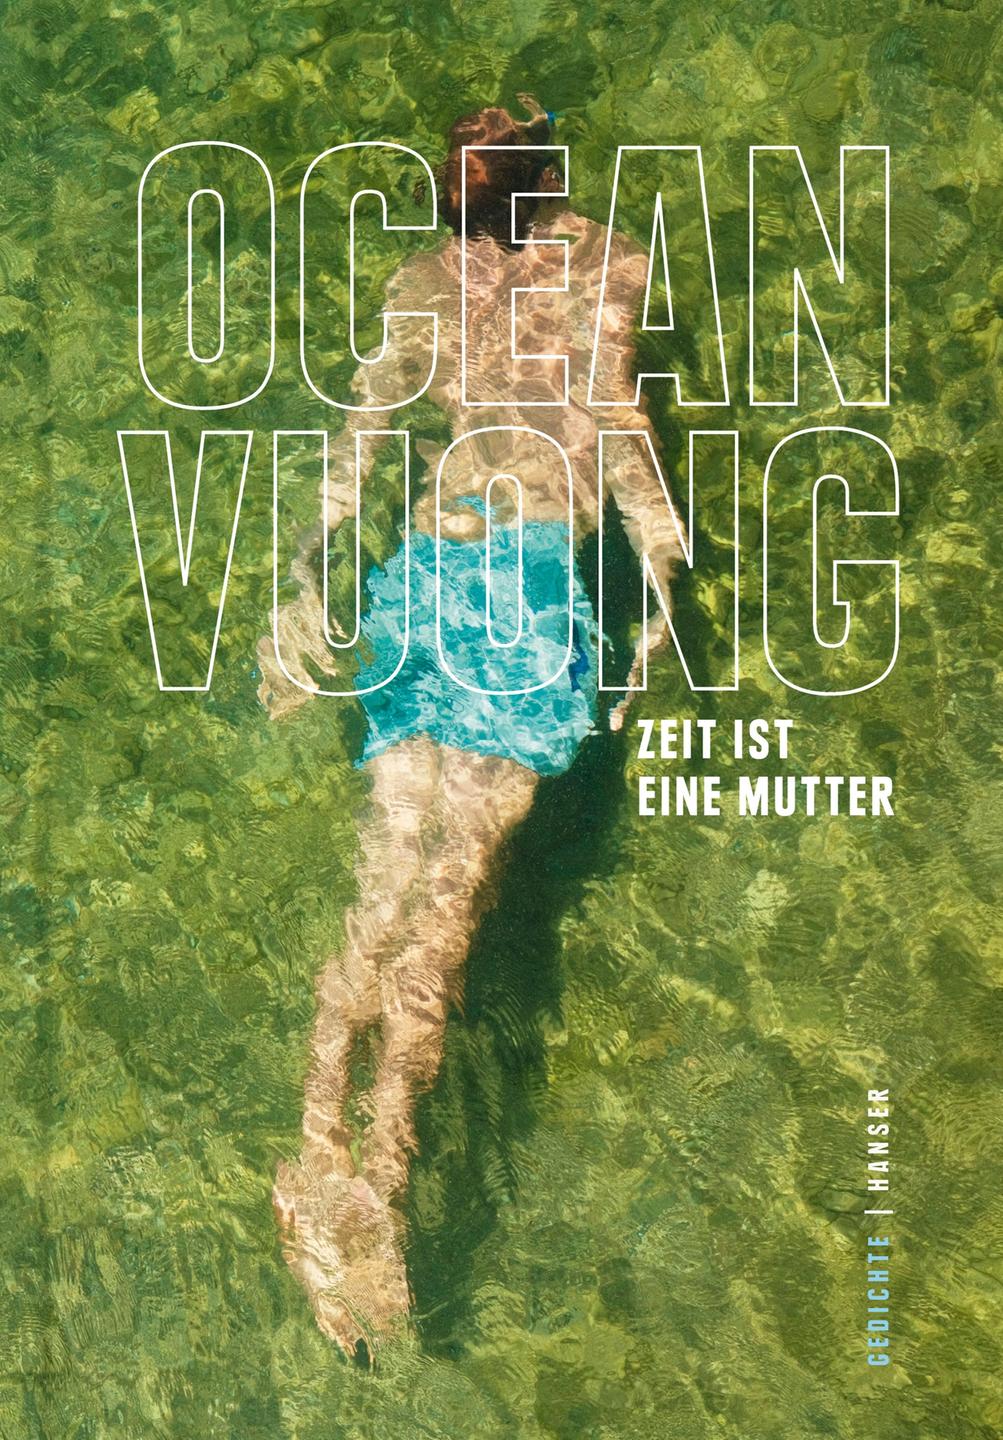 Das Cover zeigt das Gemälde eines schwimmenden Mannes im Pool.